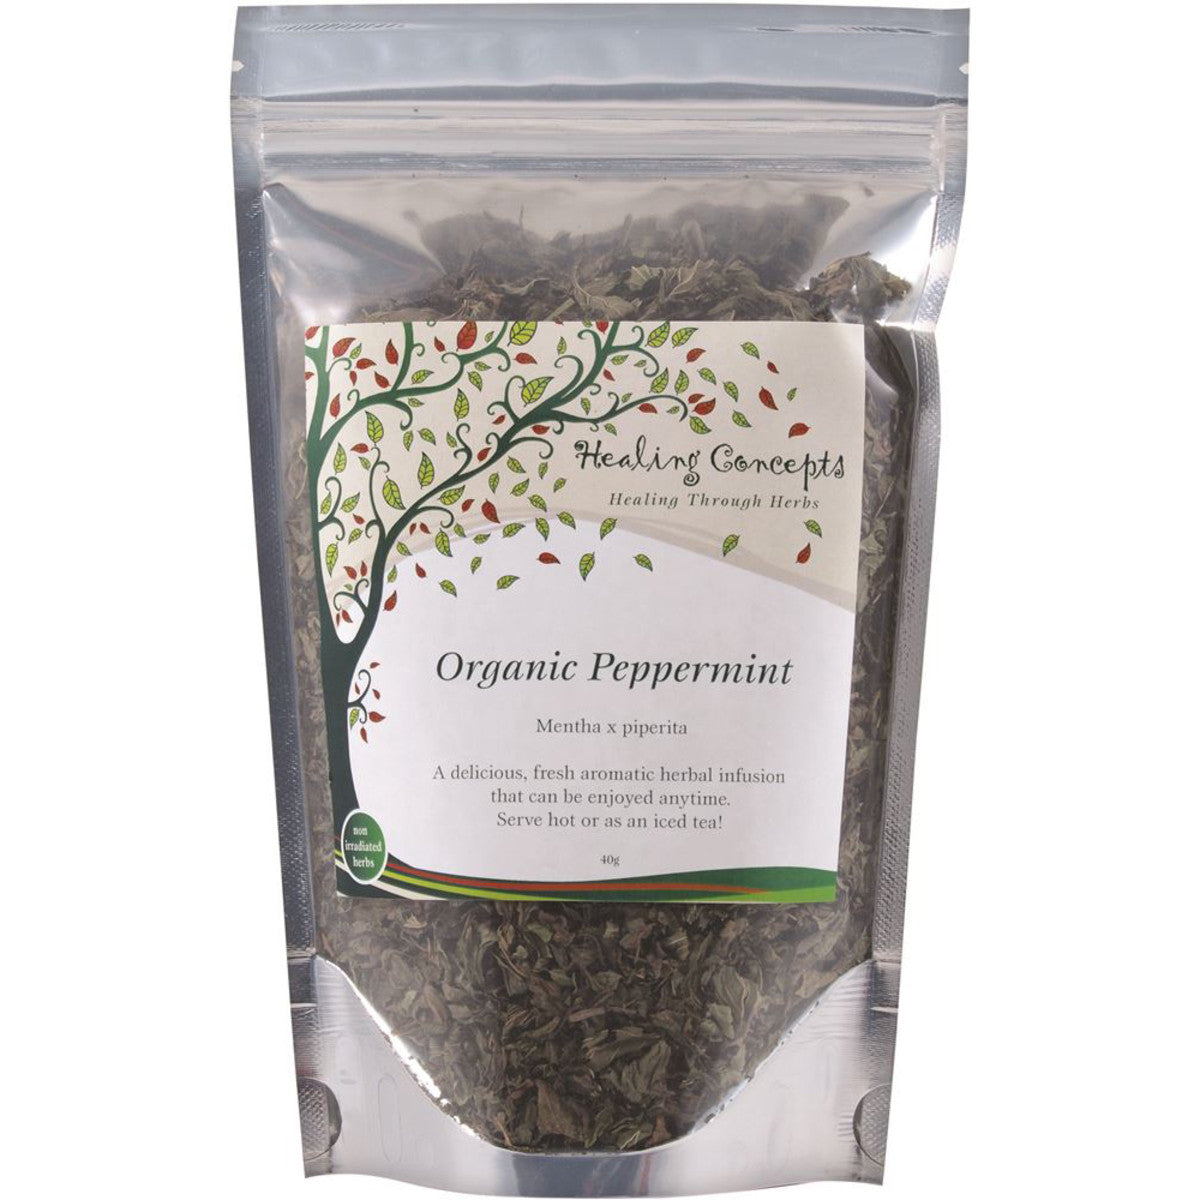 Healing Concepts Peppermint Tea 50g, Certified Organic